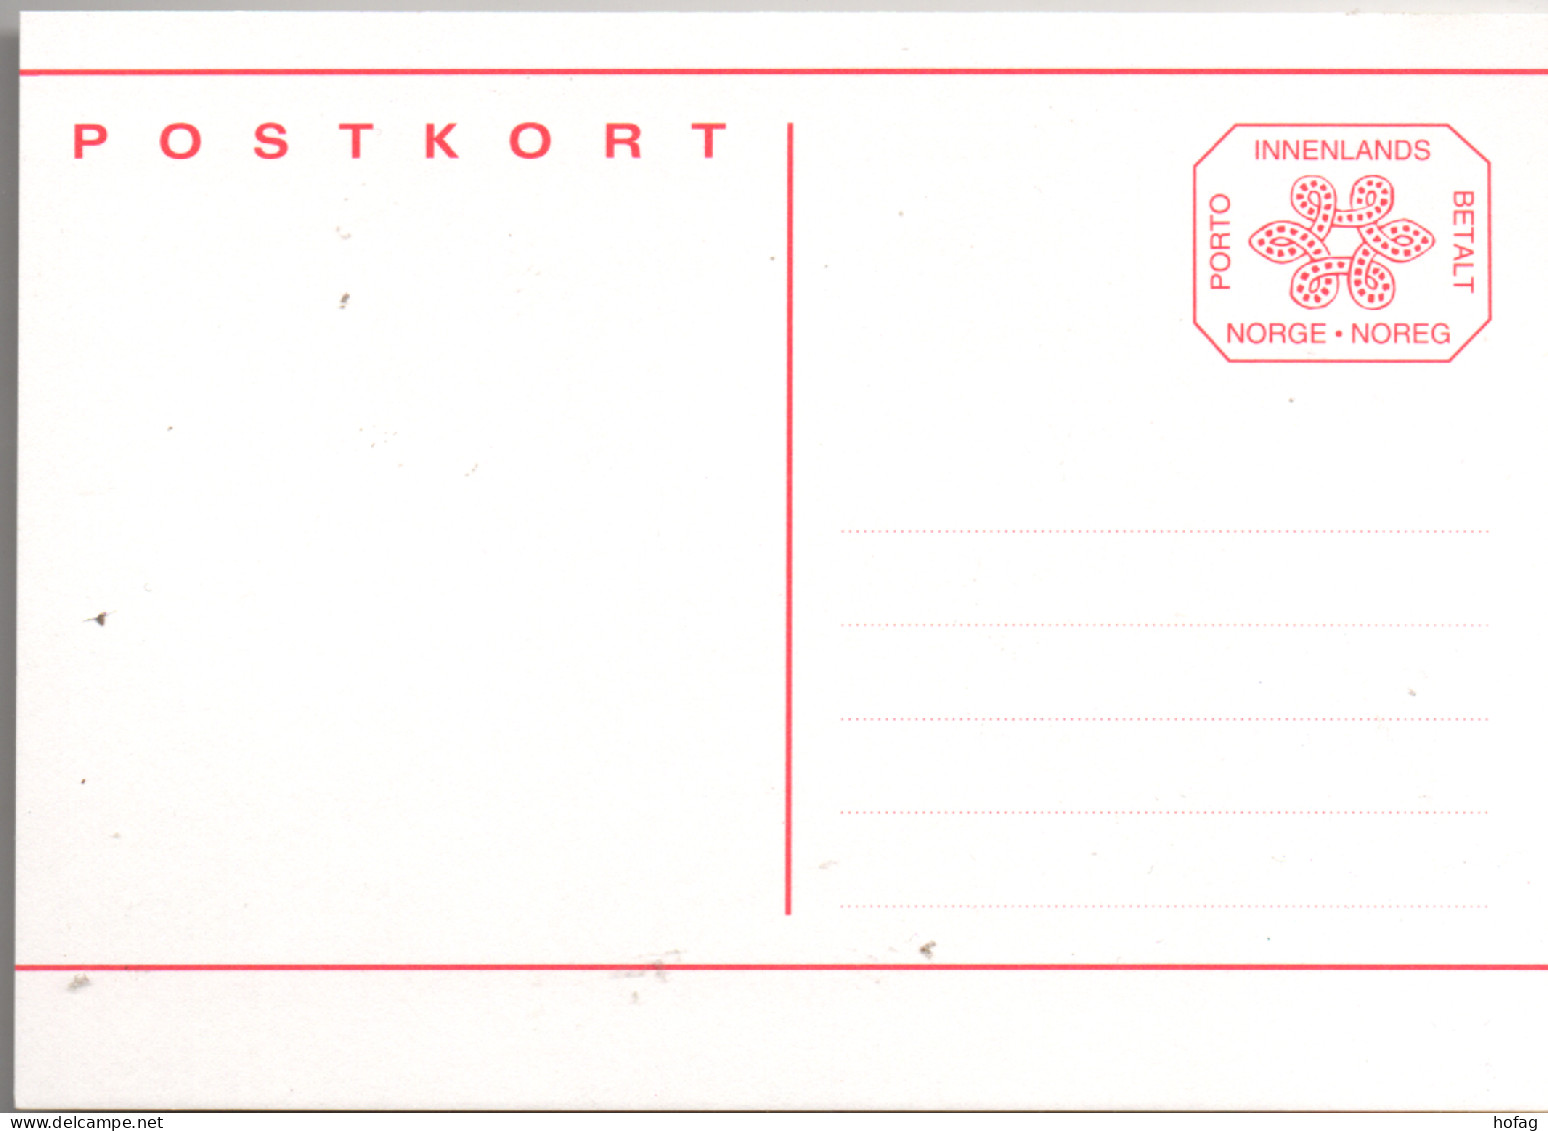 Norwegen Postkarte Ganzsache Innenlands Betalt Linien Postfrisch; Norway Stationery MNH - Interi Postali